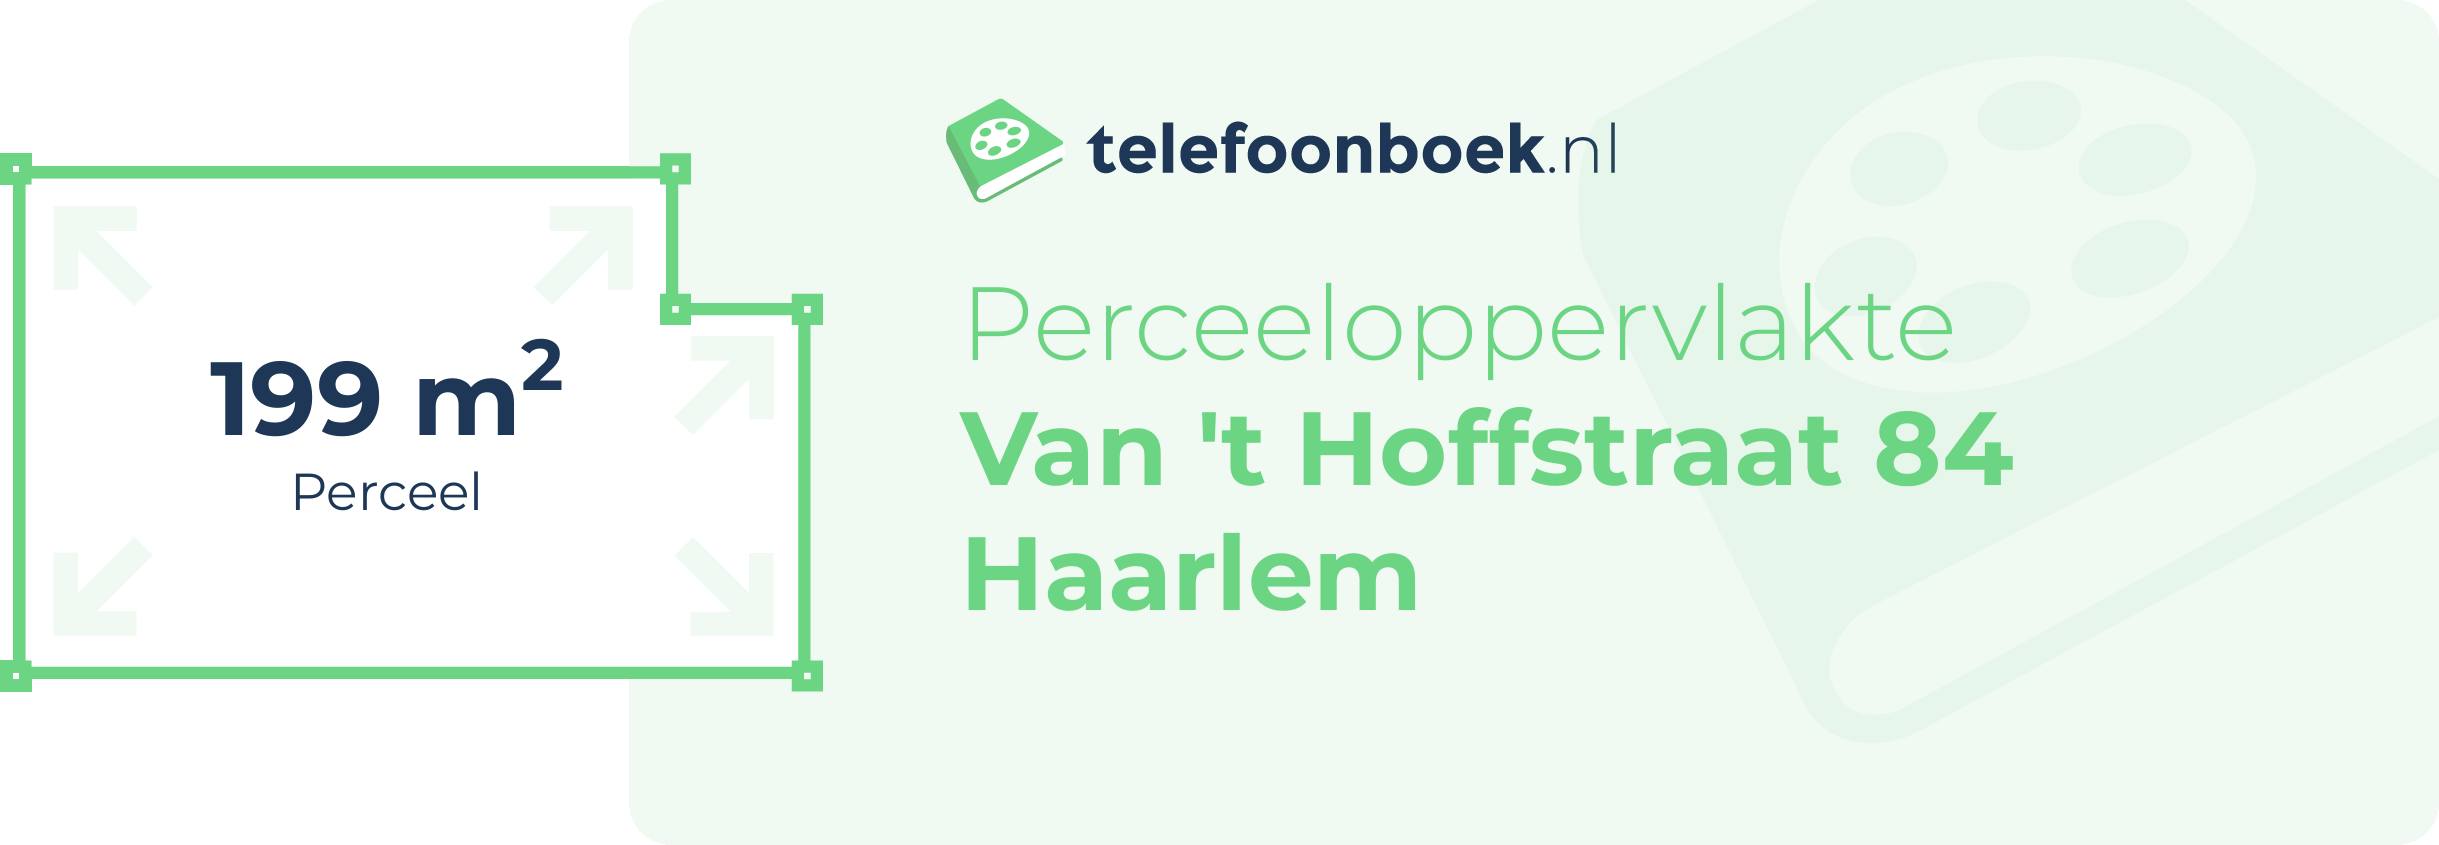 Perceeloppervlakte Van 't Hoffstraat 84 Haarlem